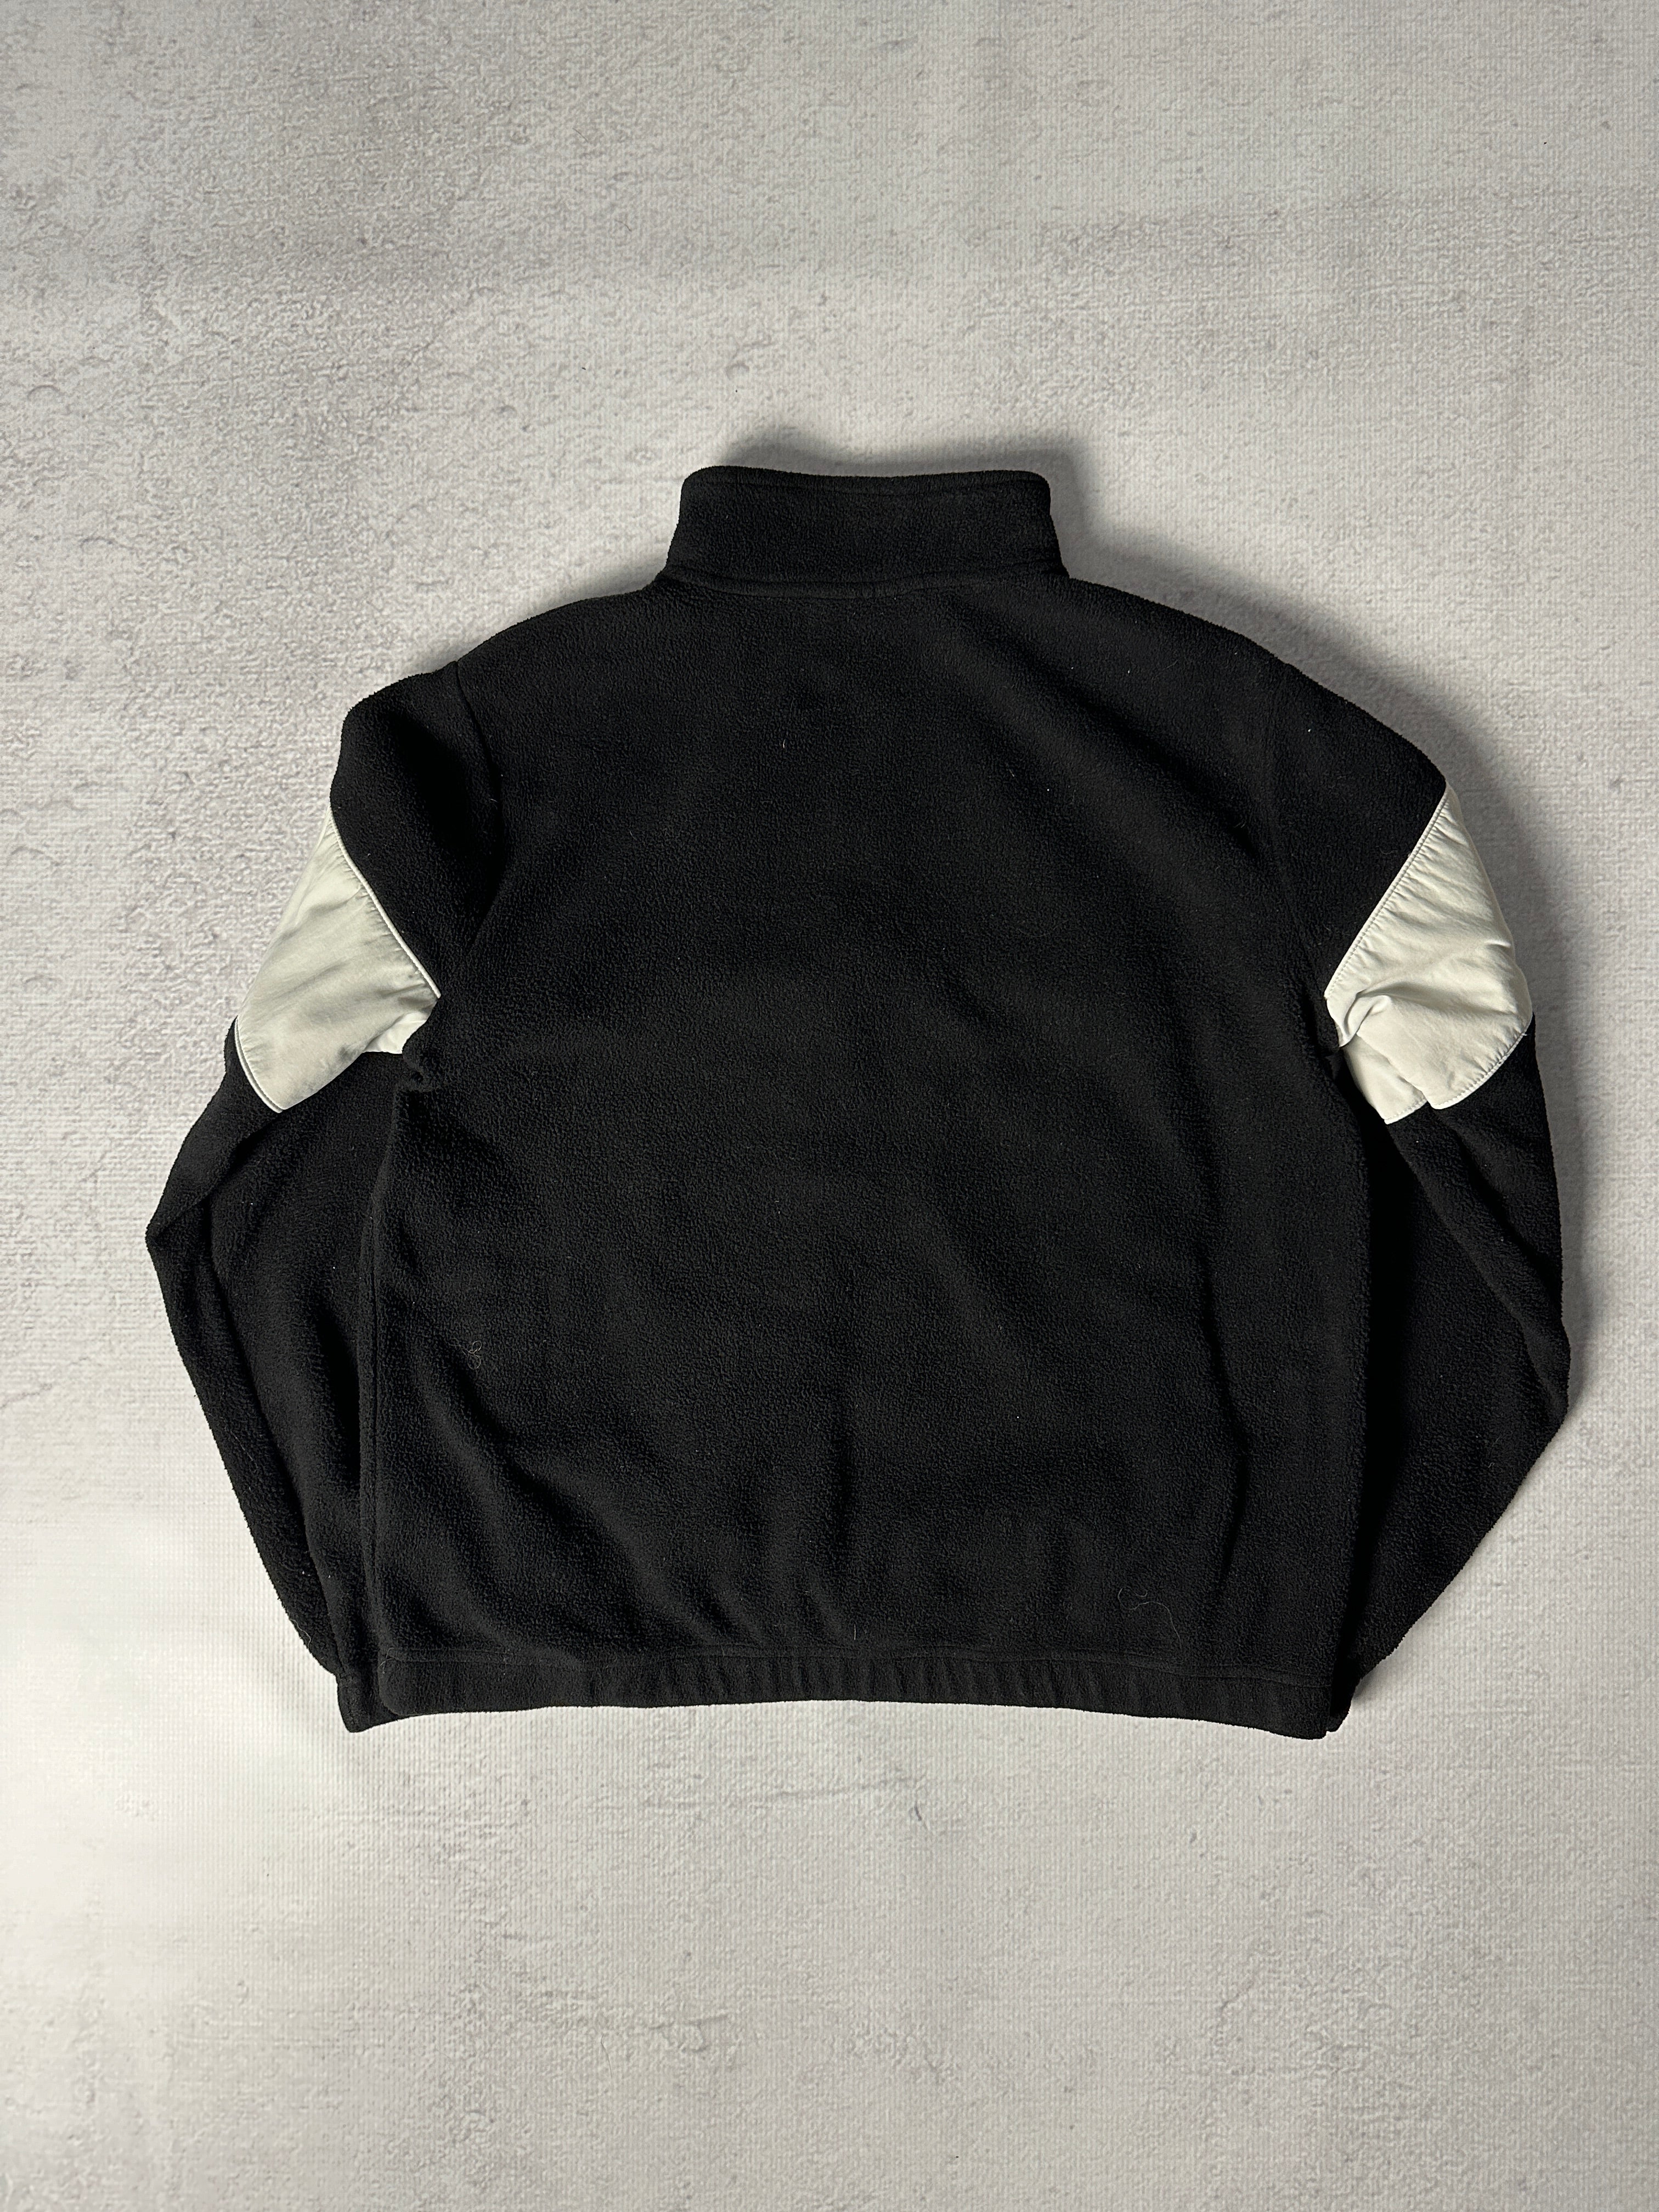 Vintage Fila 1/4 Zip Fleece Sweatshirt - Women's Small